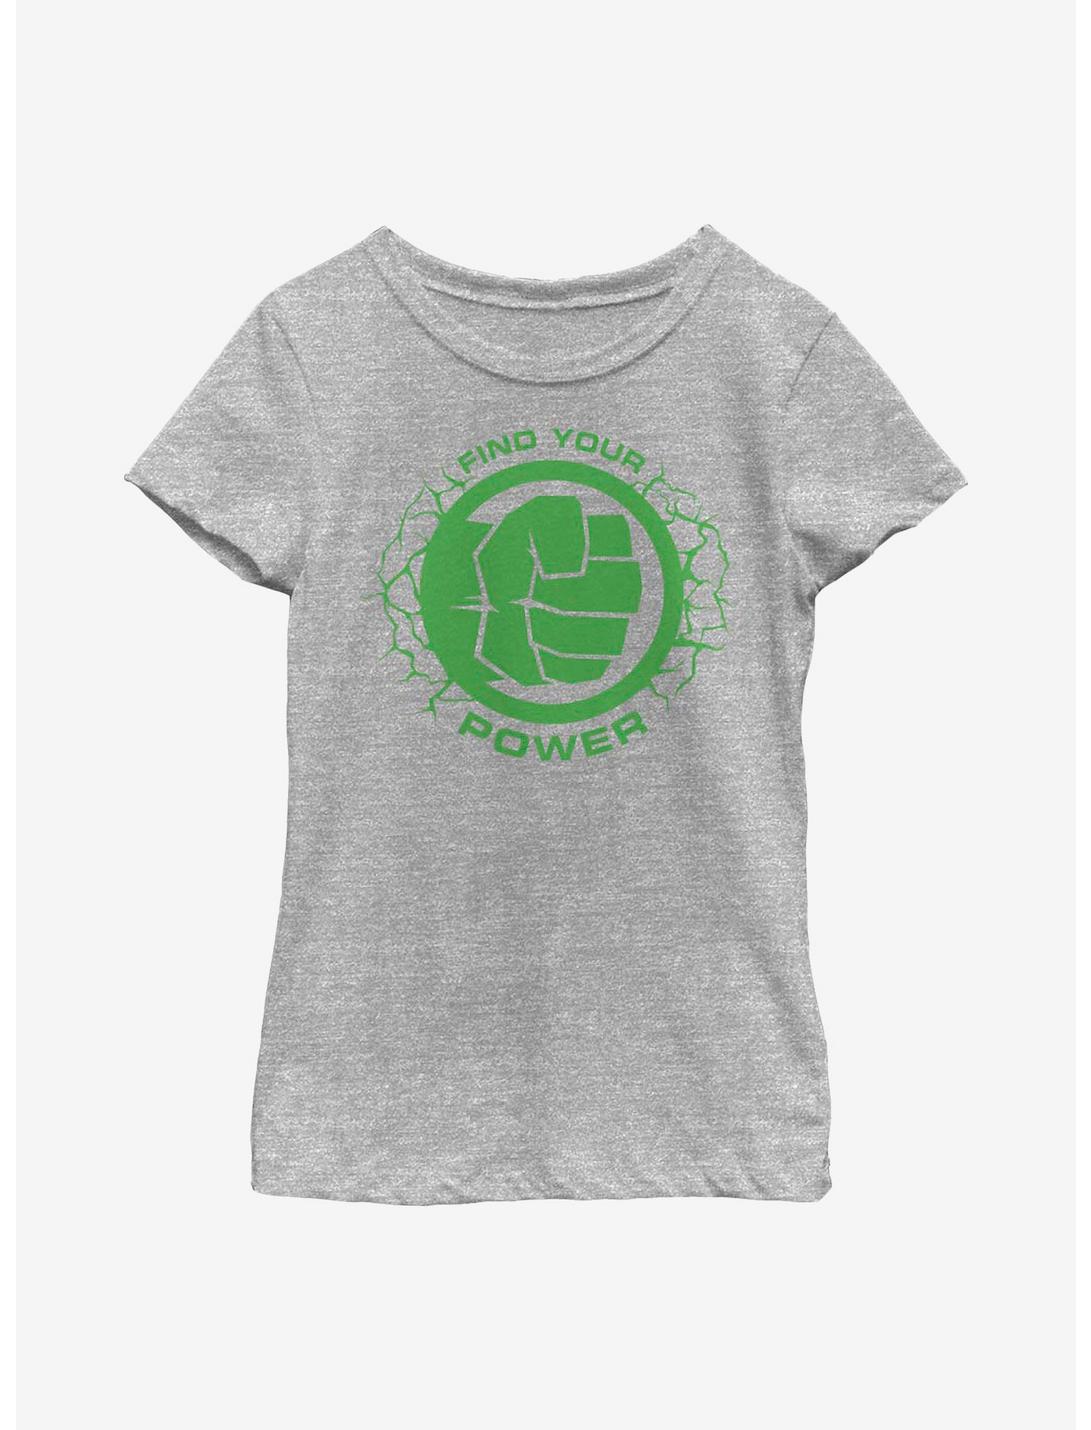 Marvel Hulk Power Of Hulk Youth Girls T-Shirt, ATH HTR, hi-res